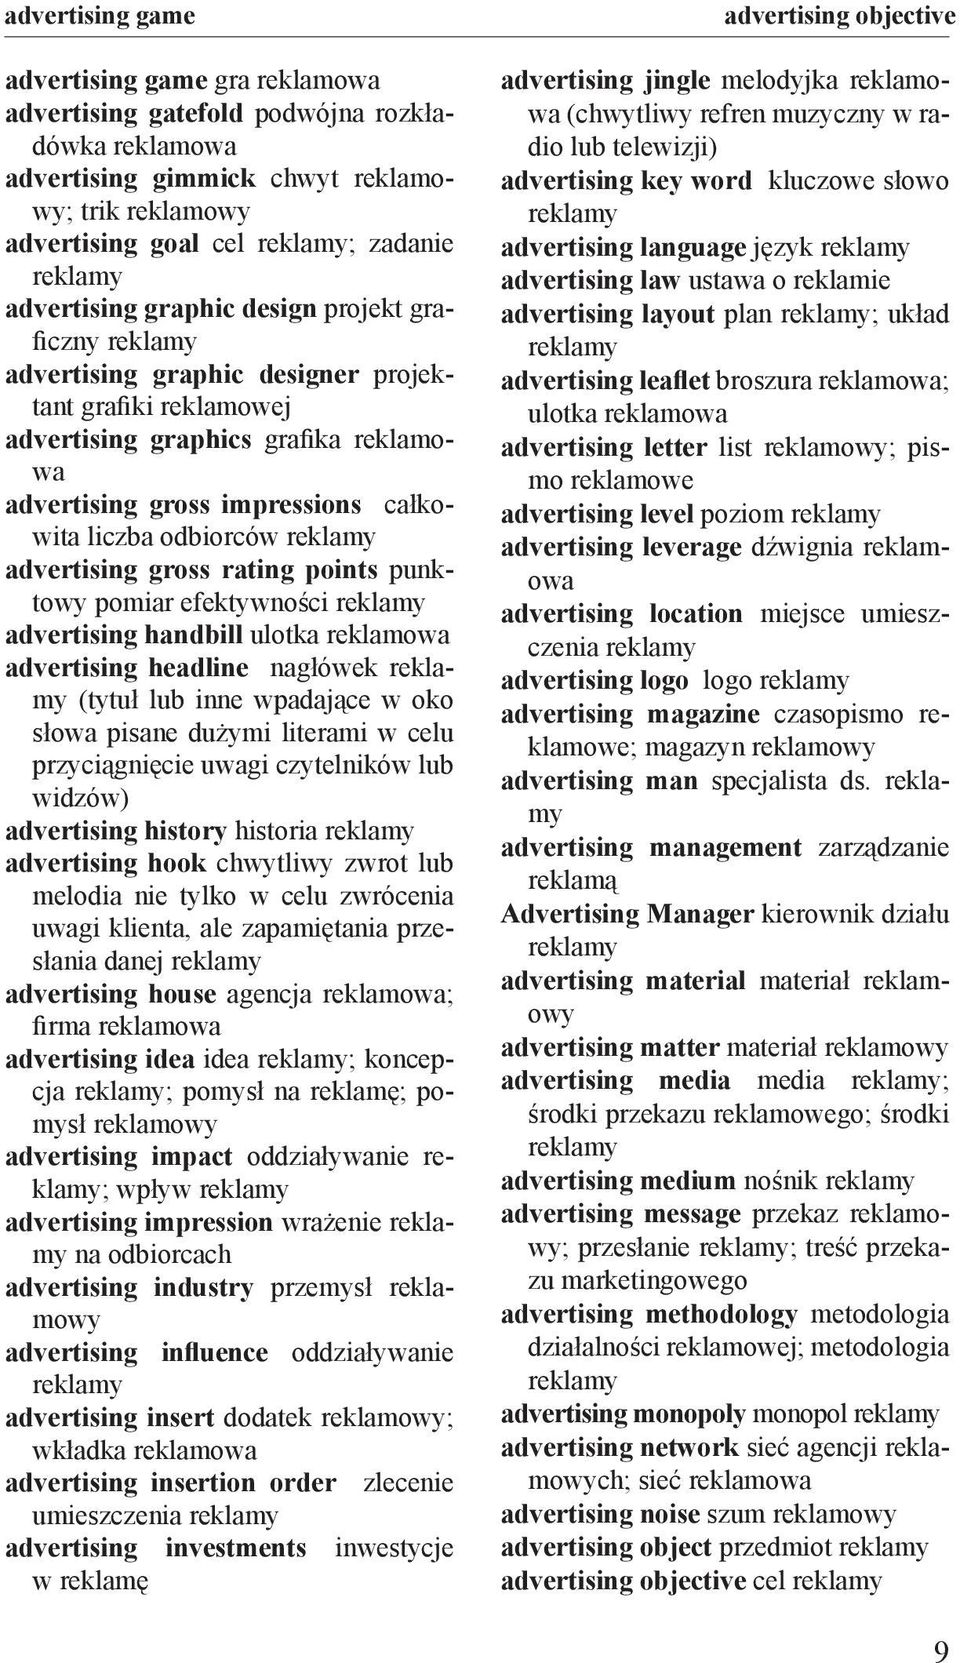 gross rating points punktowy pomiar efektywności advertising handbill ulotka reklamowa advertising headline nagłówek (tytuł lub inne wpadające w oko słowa pisane dużymi literami w celu przyciągnięcie